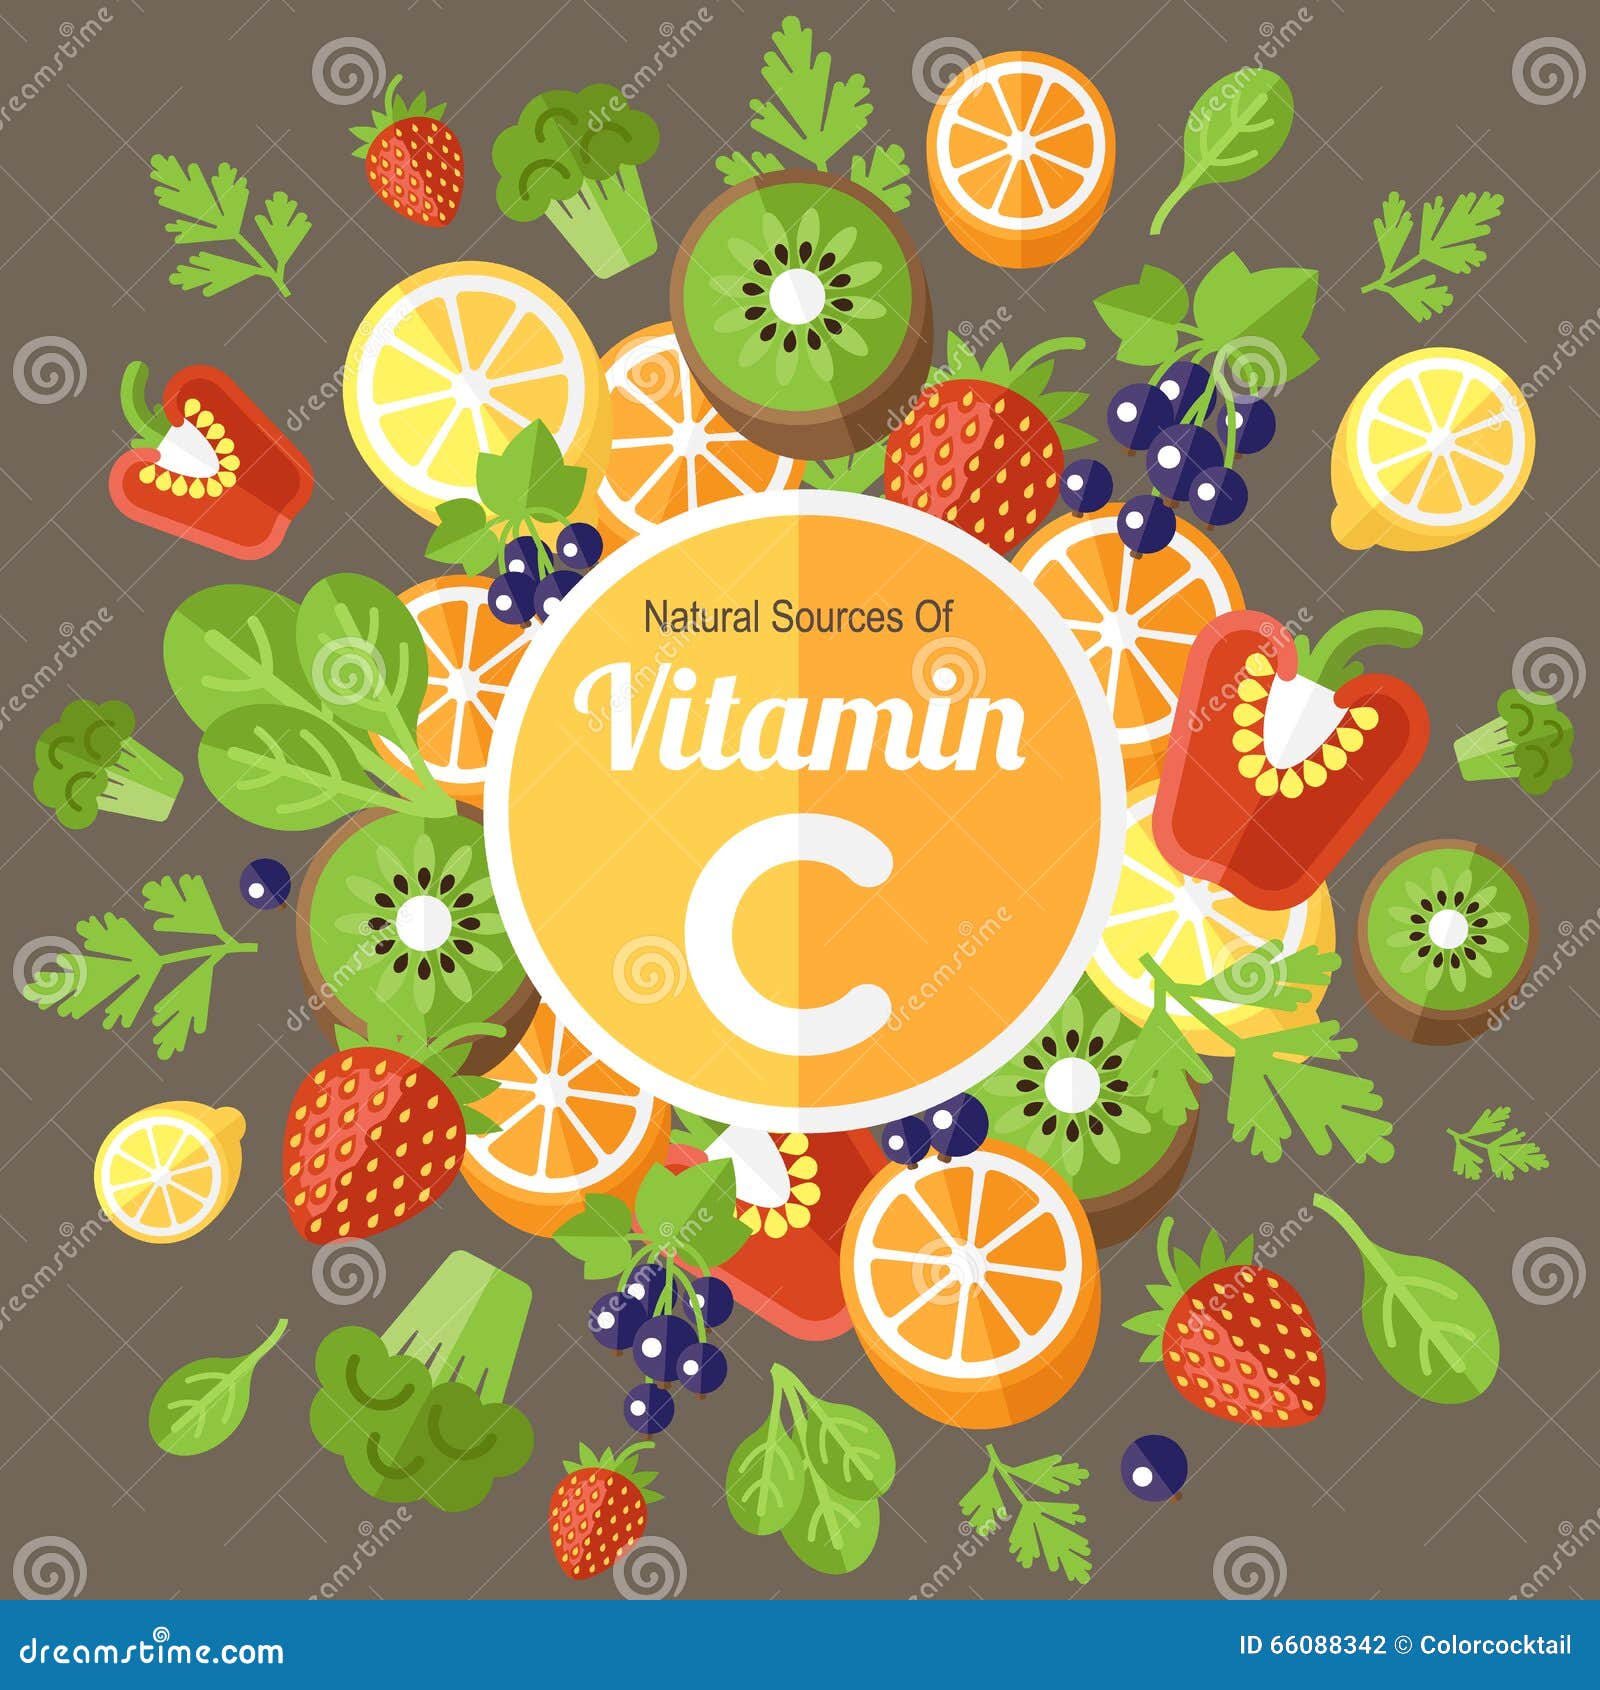 Элемент плодовое. Плакат витамины. Витамин c плакат. Плакат витамины в овощах и фруктах. Реклама витаминов плакат.